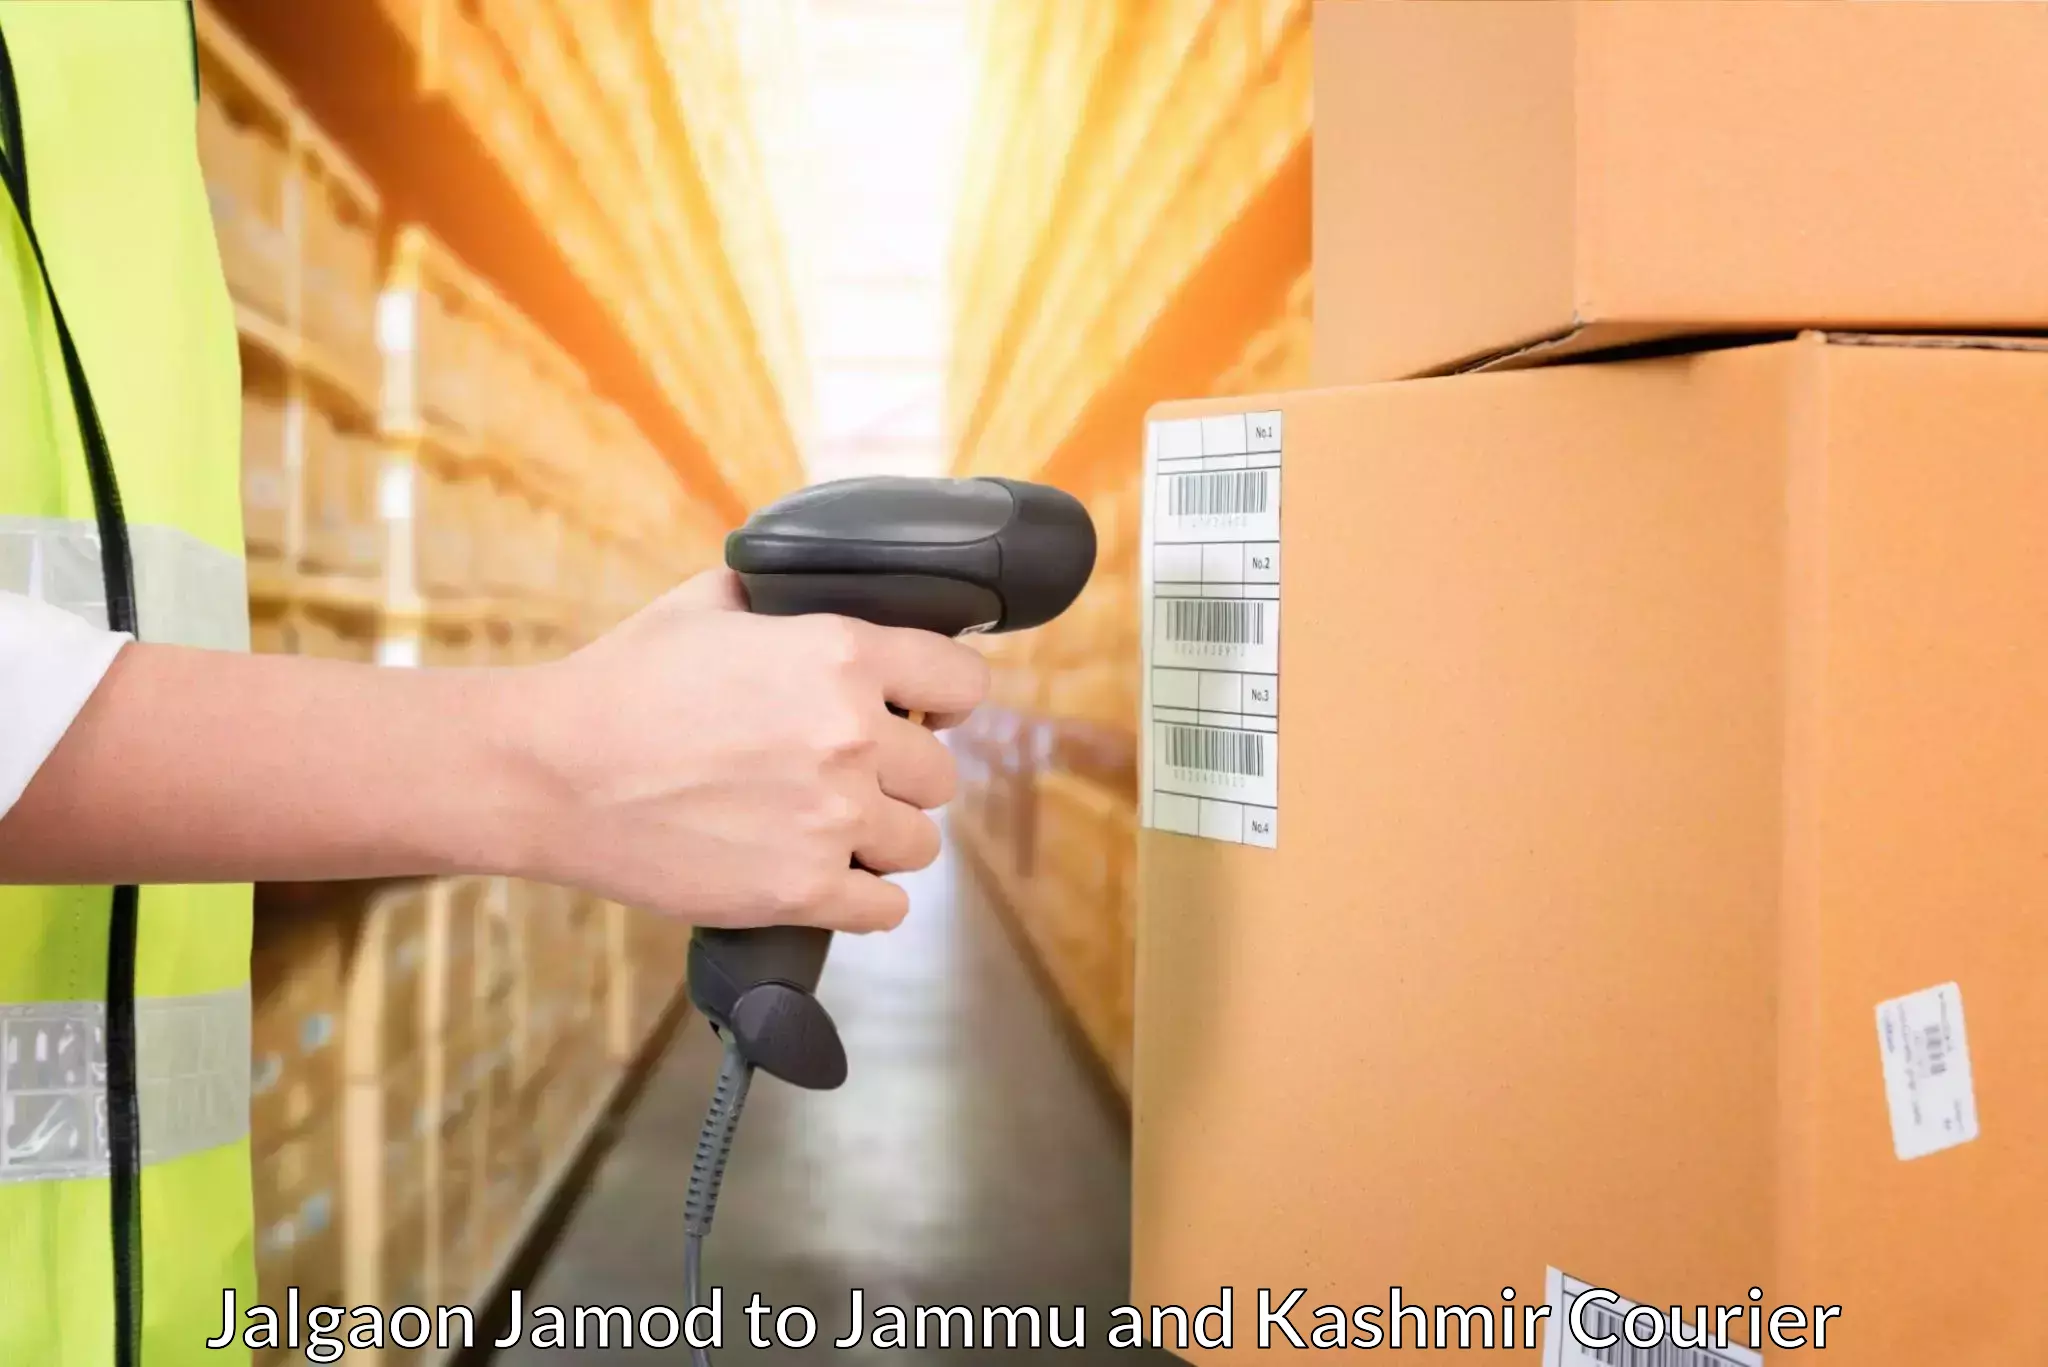 Express logistics service in Jalgaon Jamod to Sunderbani